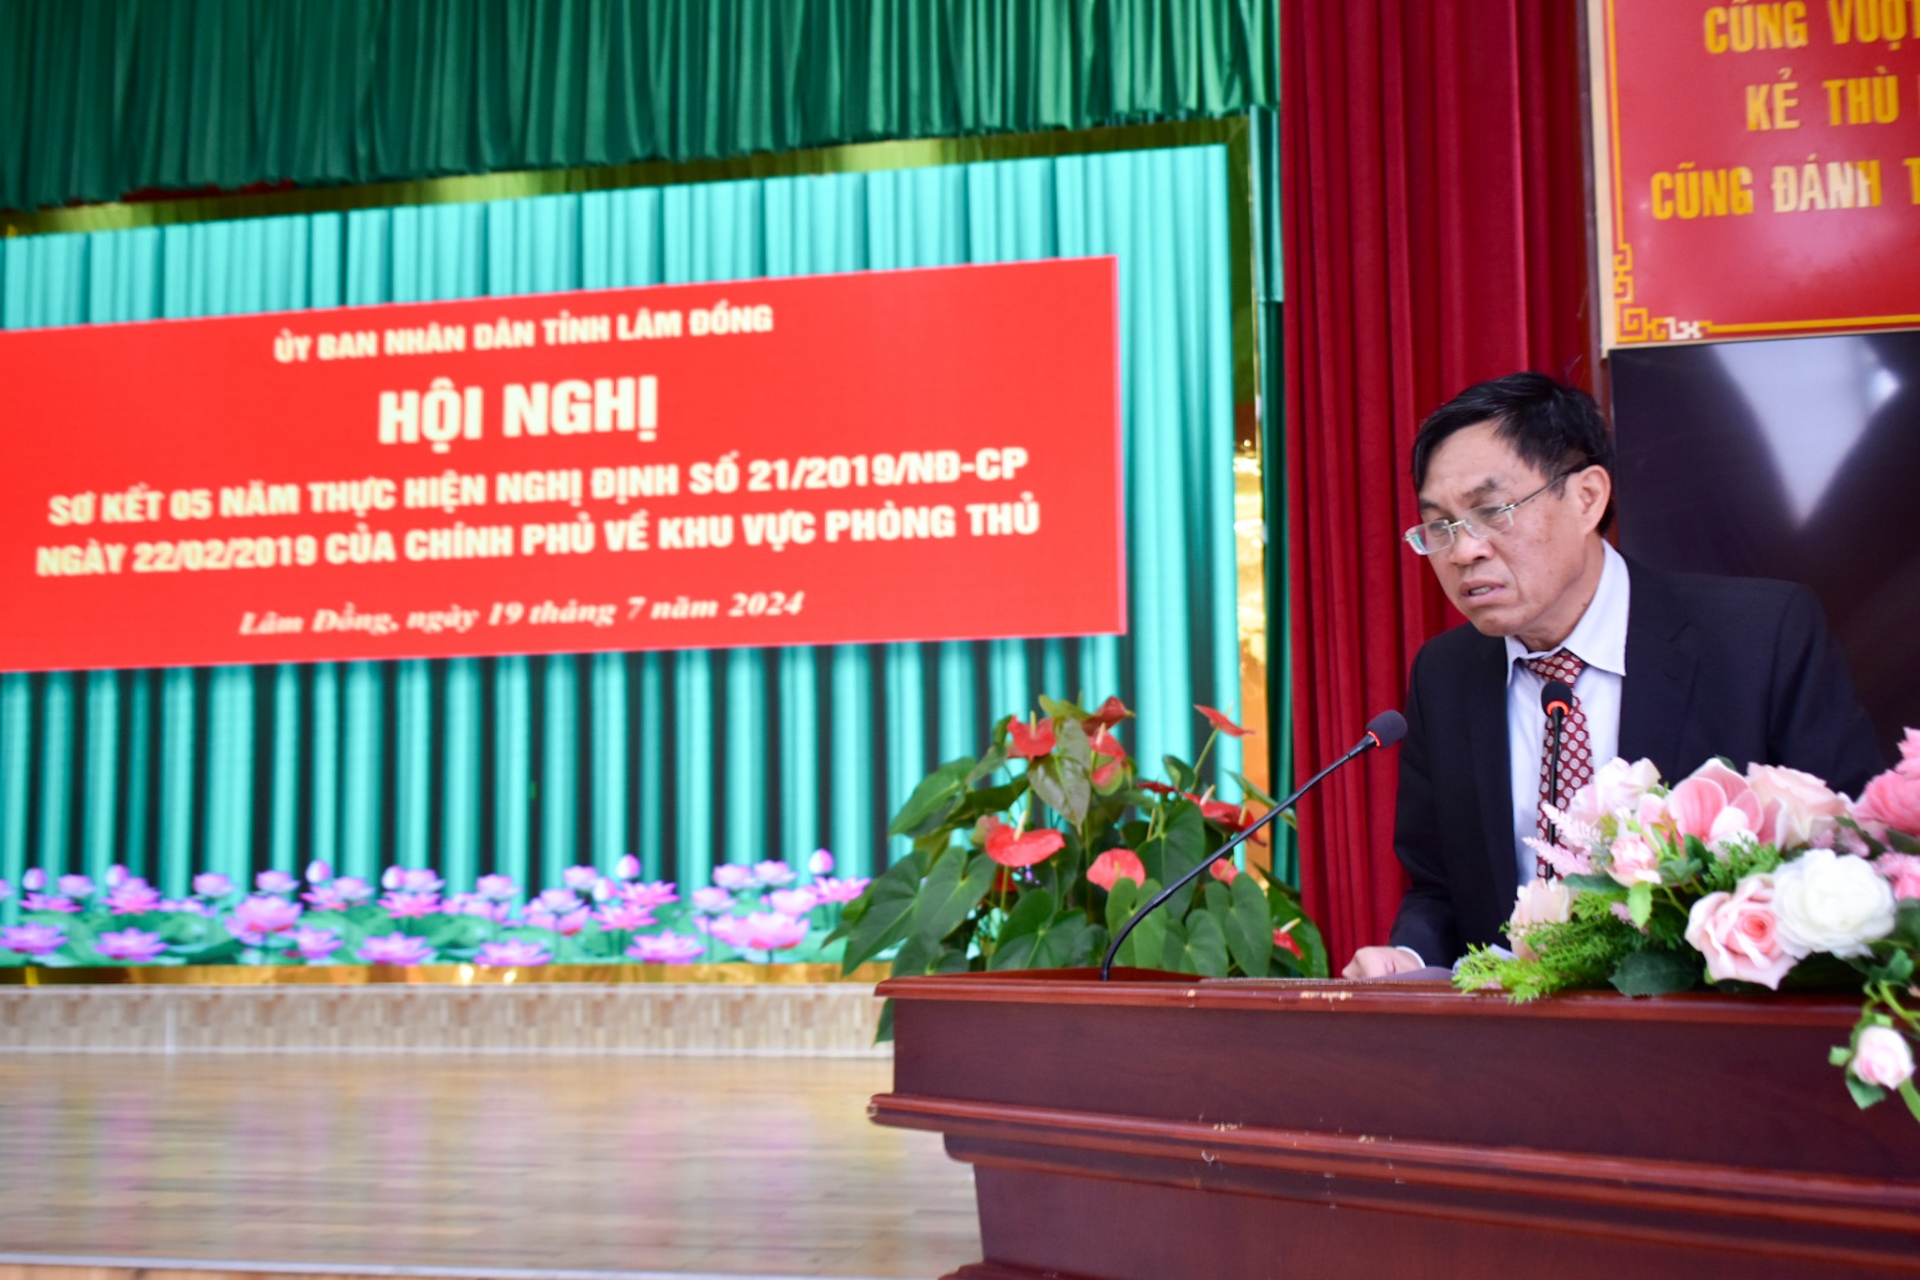  Phó Chủ tịch UBND tỉnh Võ Ngọc Hiệp phát biểu kết luận hội nghị 